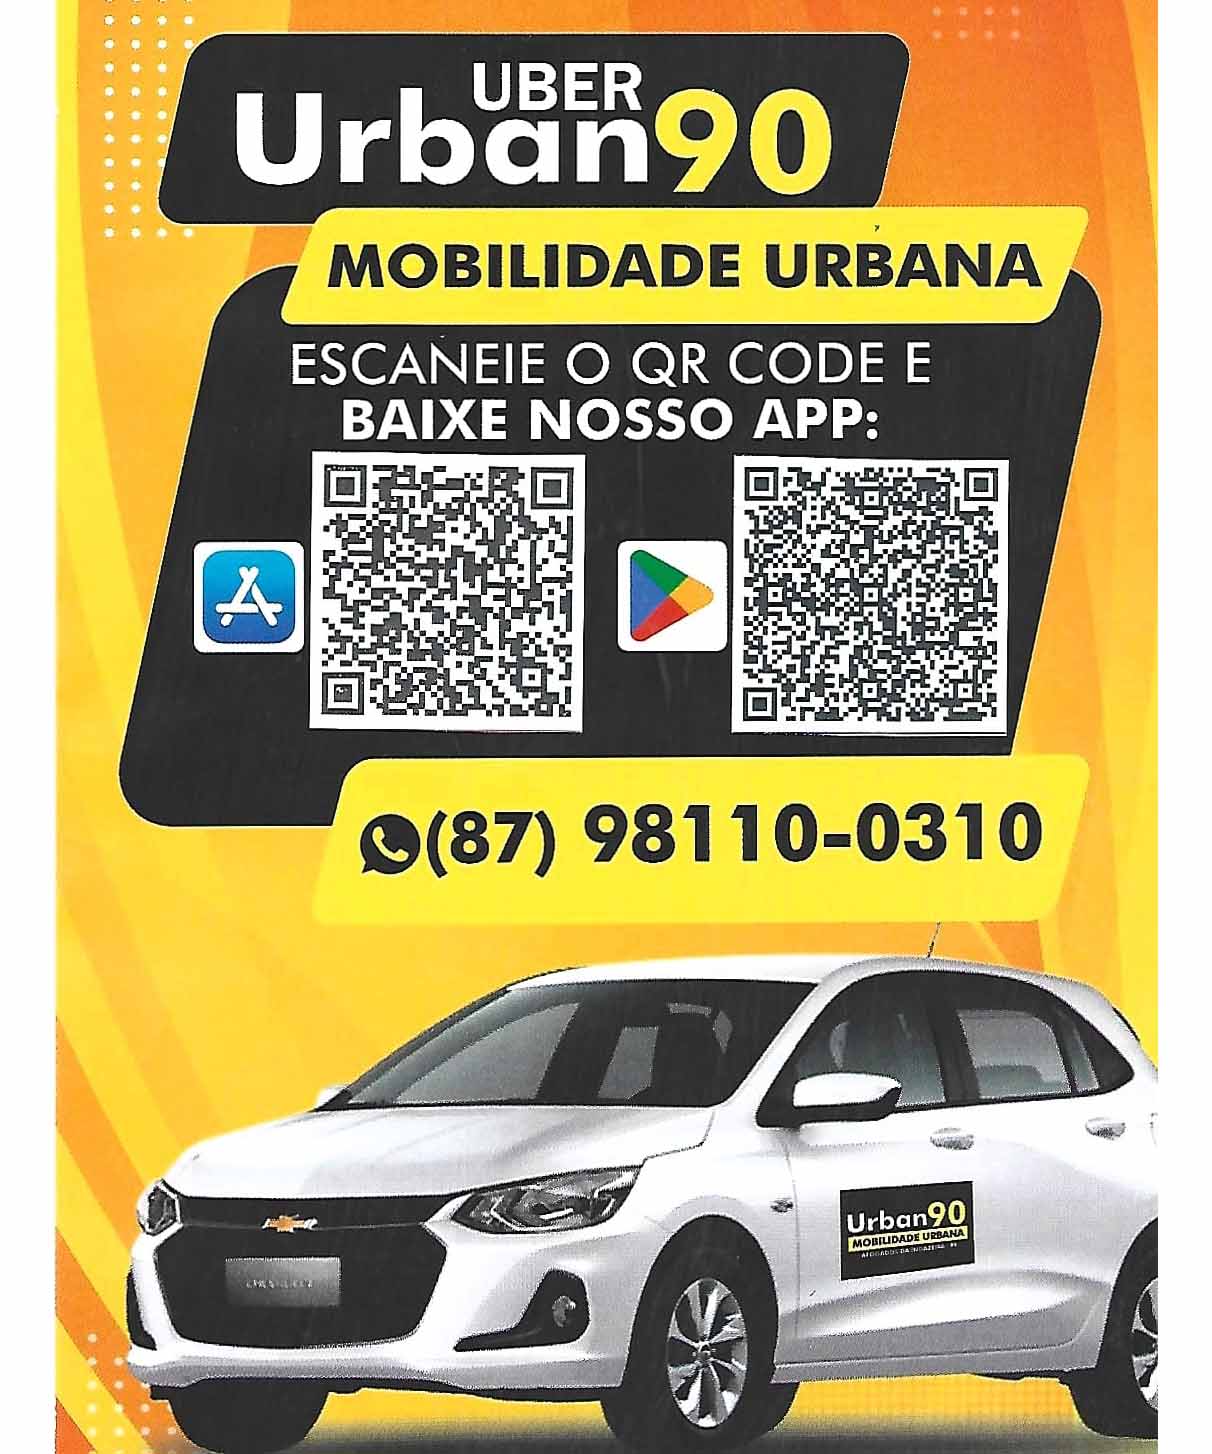 Urban 90 chega a ST com promoção especial aos clientes